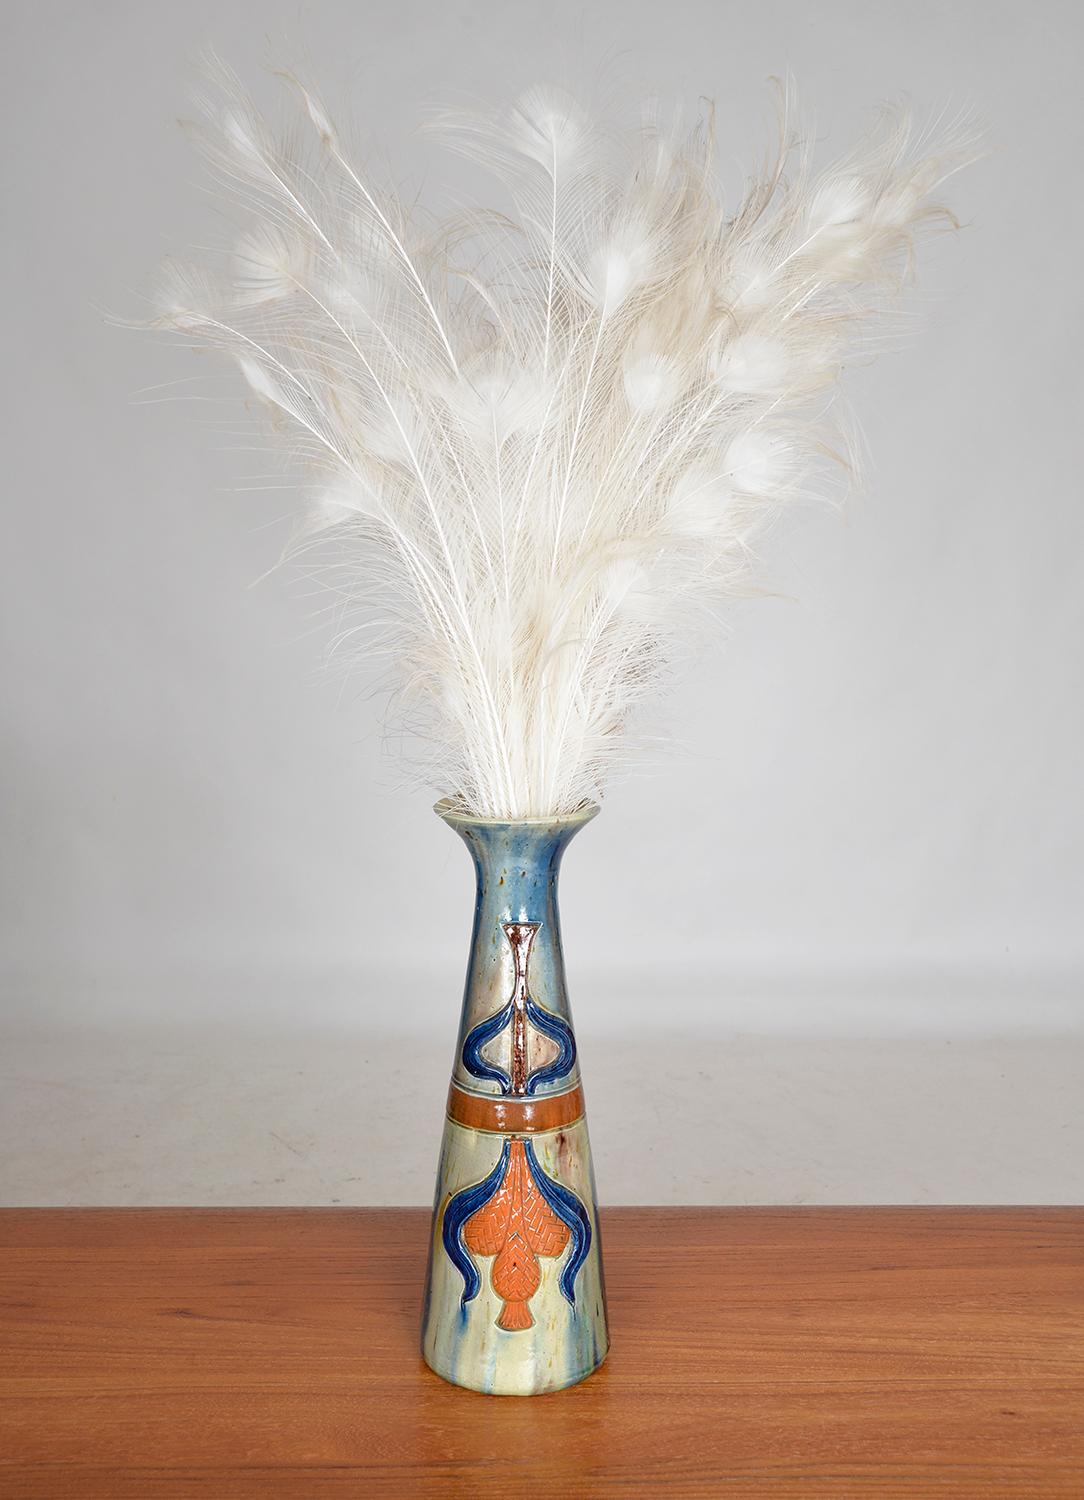 Flemish Studio Pottery Art Nouveau Drip Glazed Earthenware Vase 1900s Folk Art For Sale 8